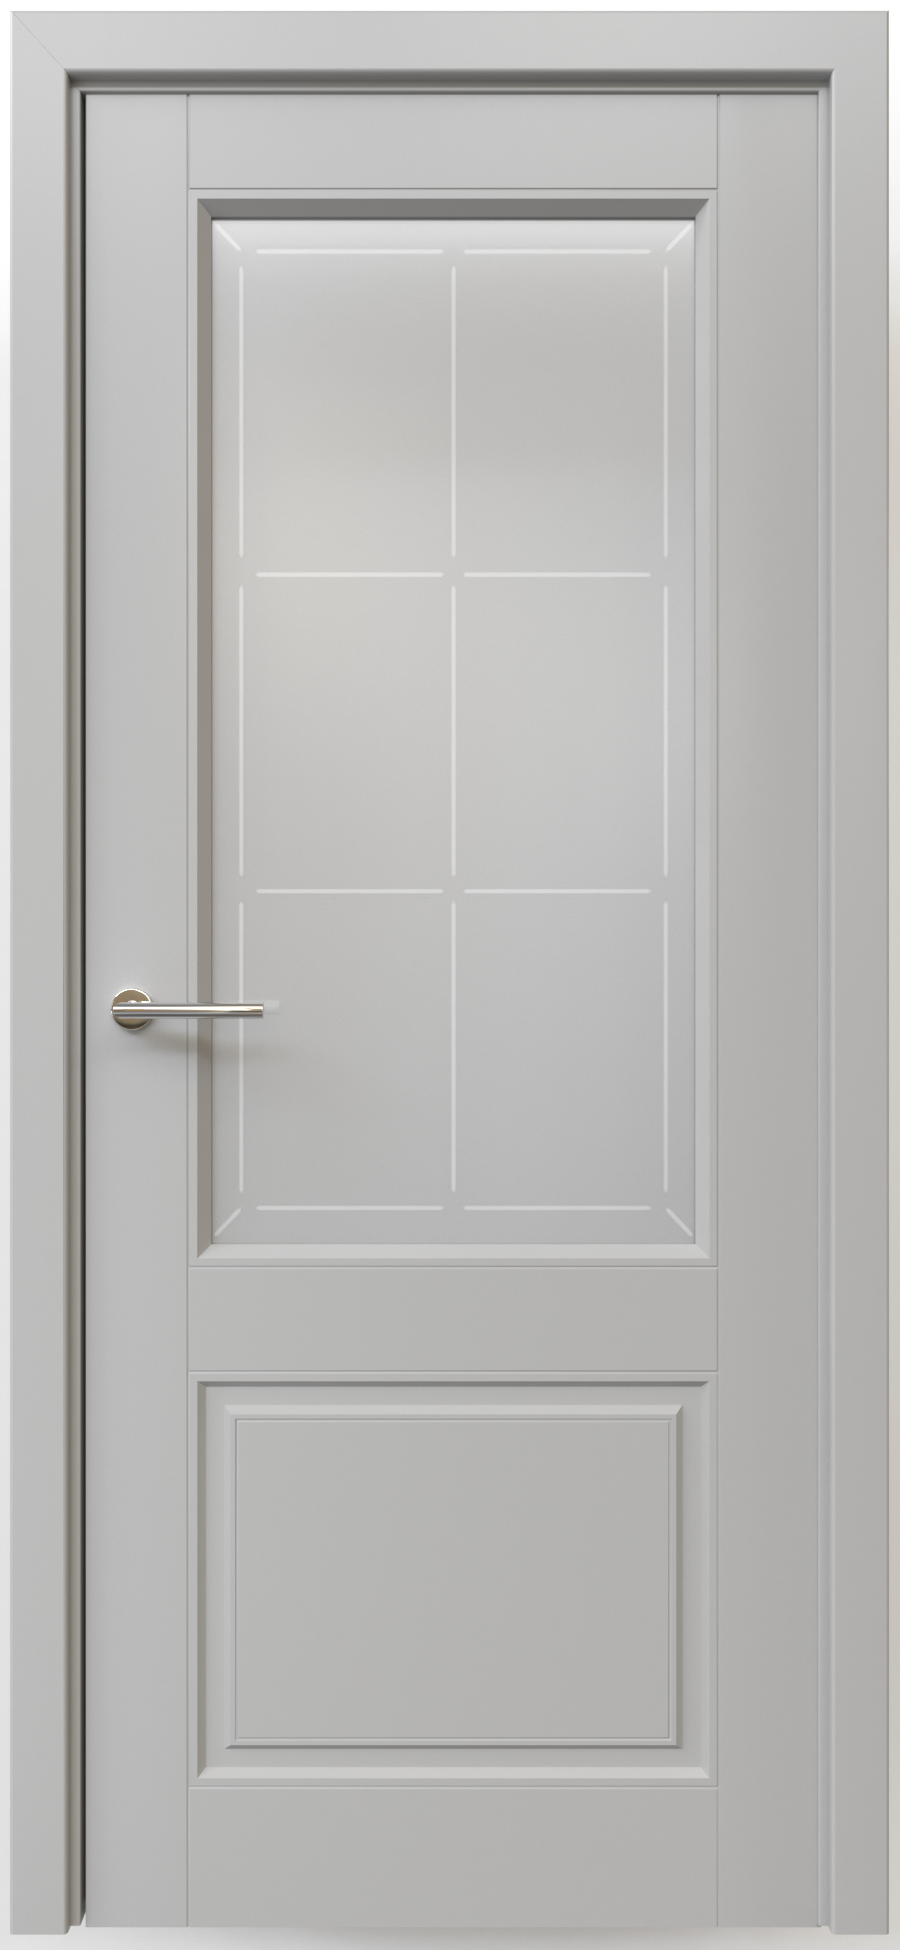 Полотно дверное остекленное Эмаль Классика-2 ЛЕВОЕ 600 серый стекло мателюкс "Прованс"(защелка маг.)